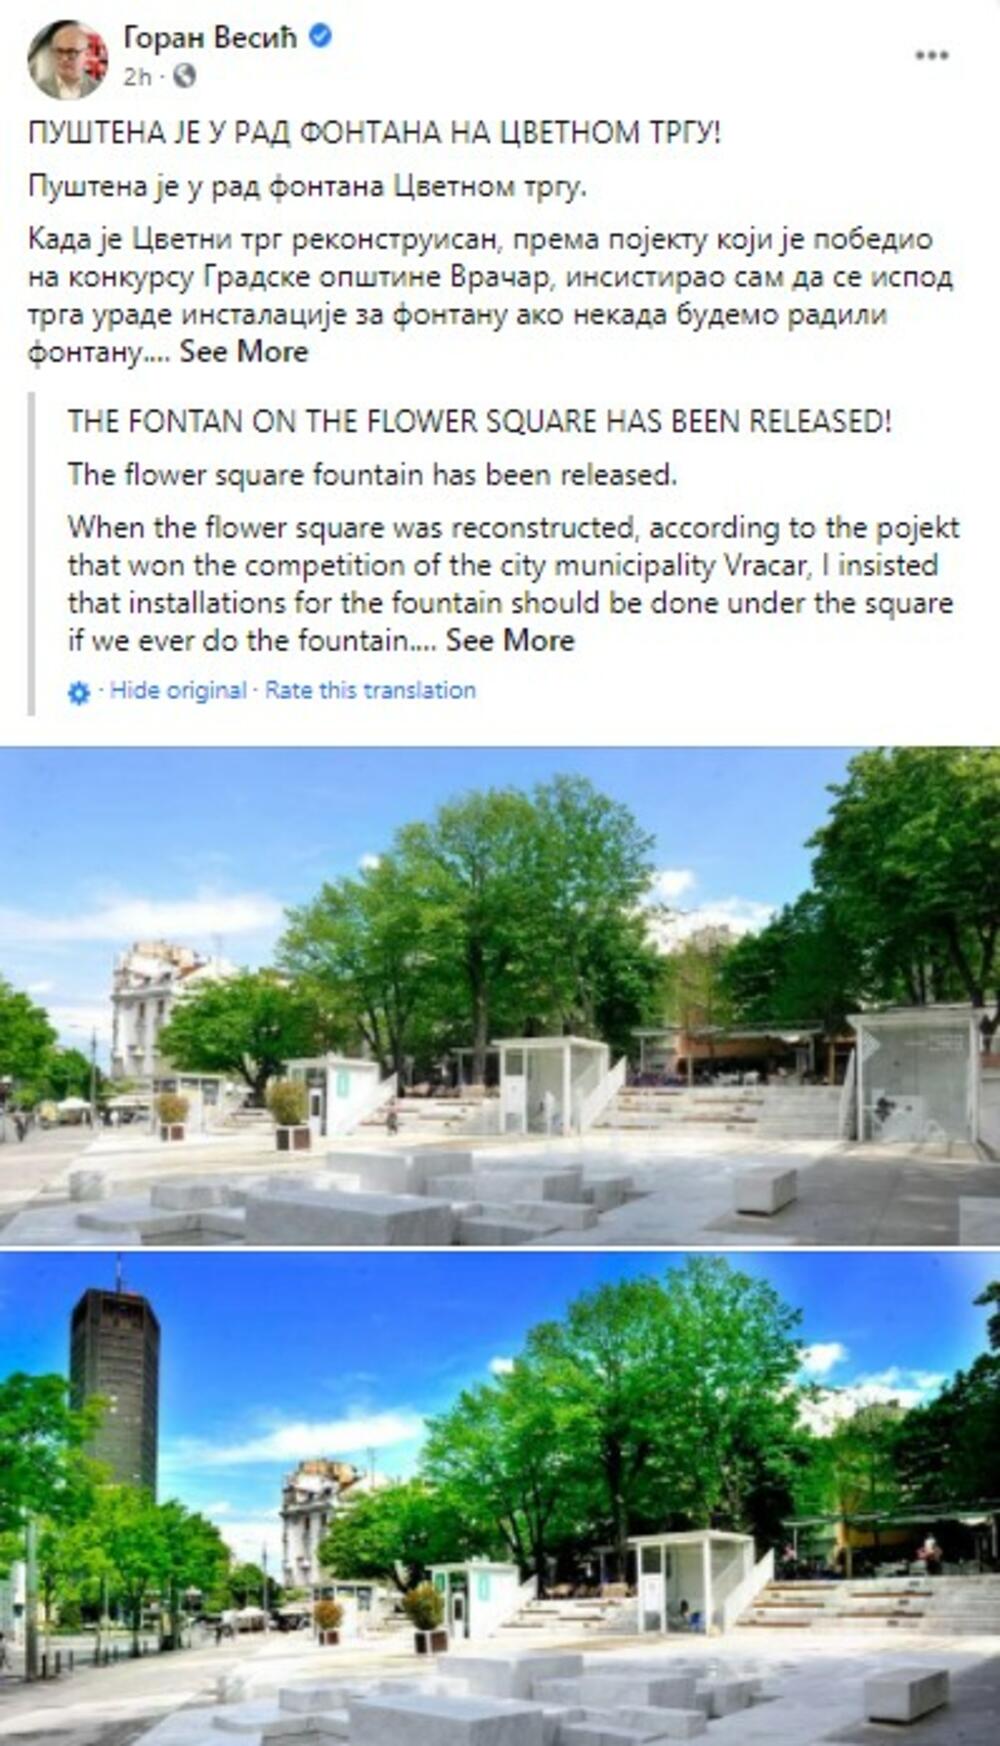 Cvetni trg, fontana